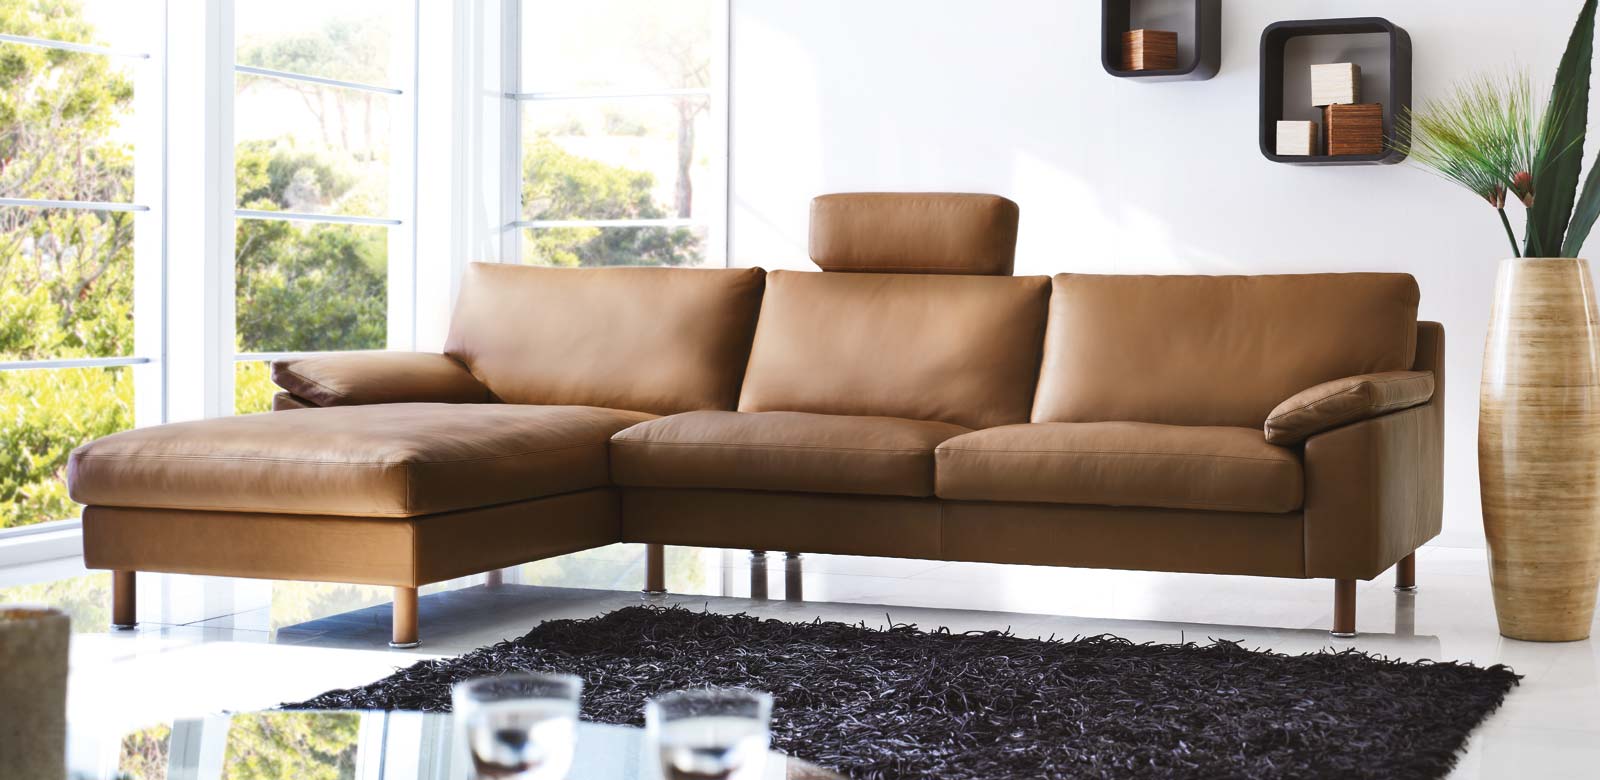 CL650 Longchair Sofa in bruin leer met centrale hoofdsteun